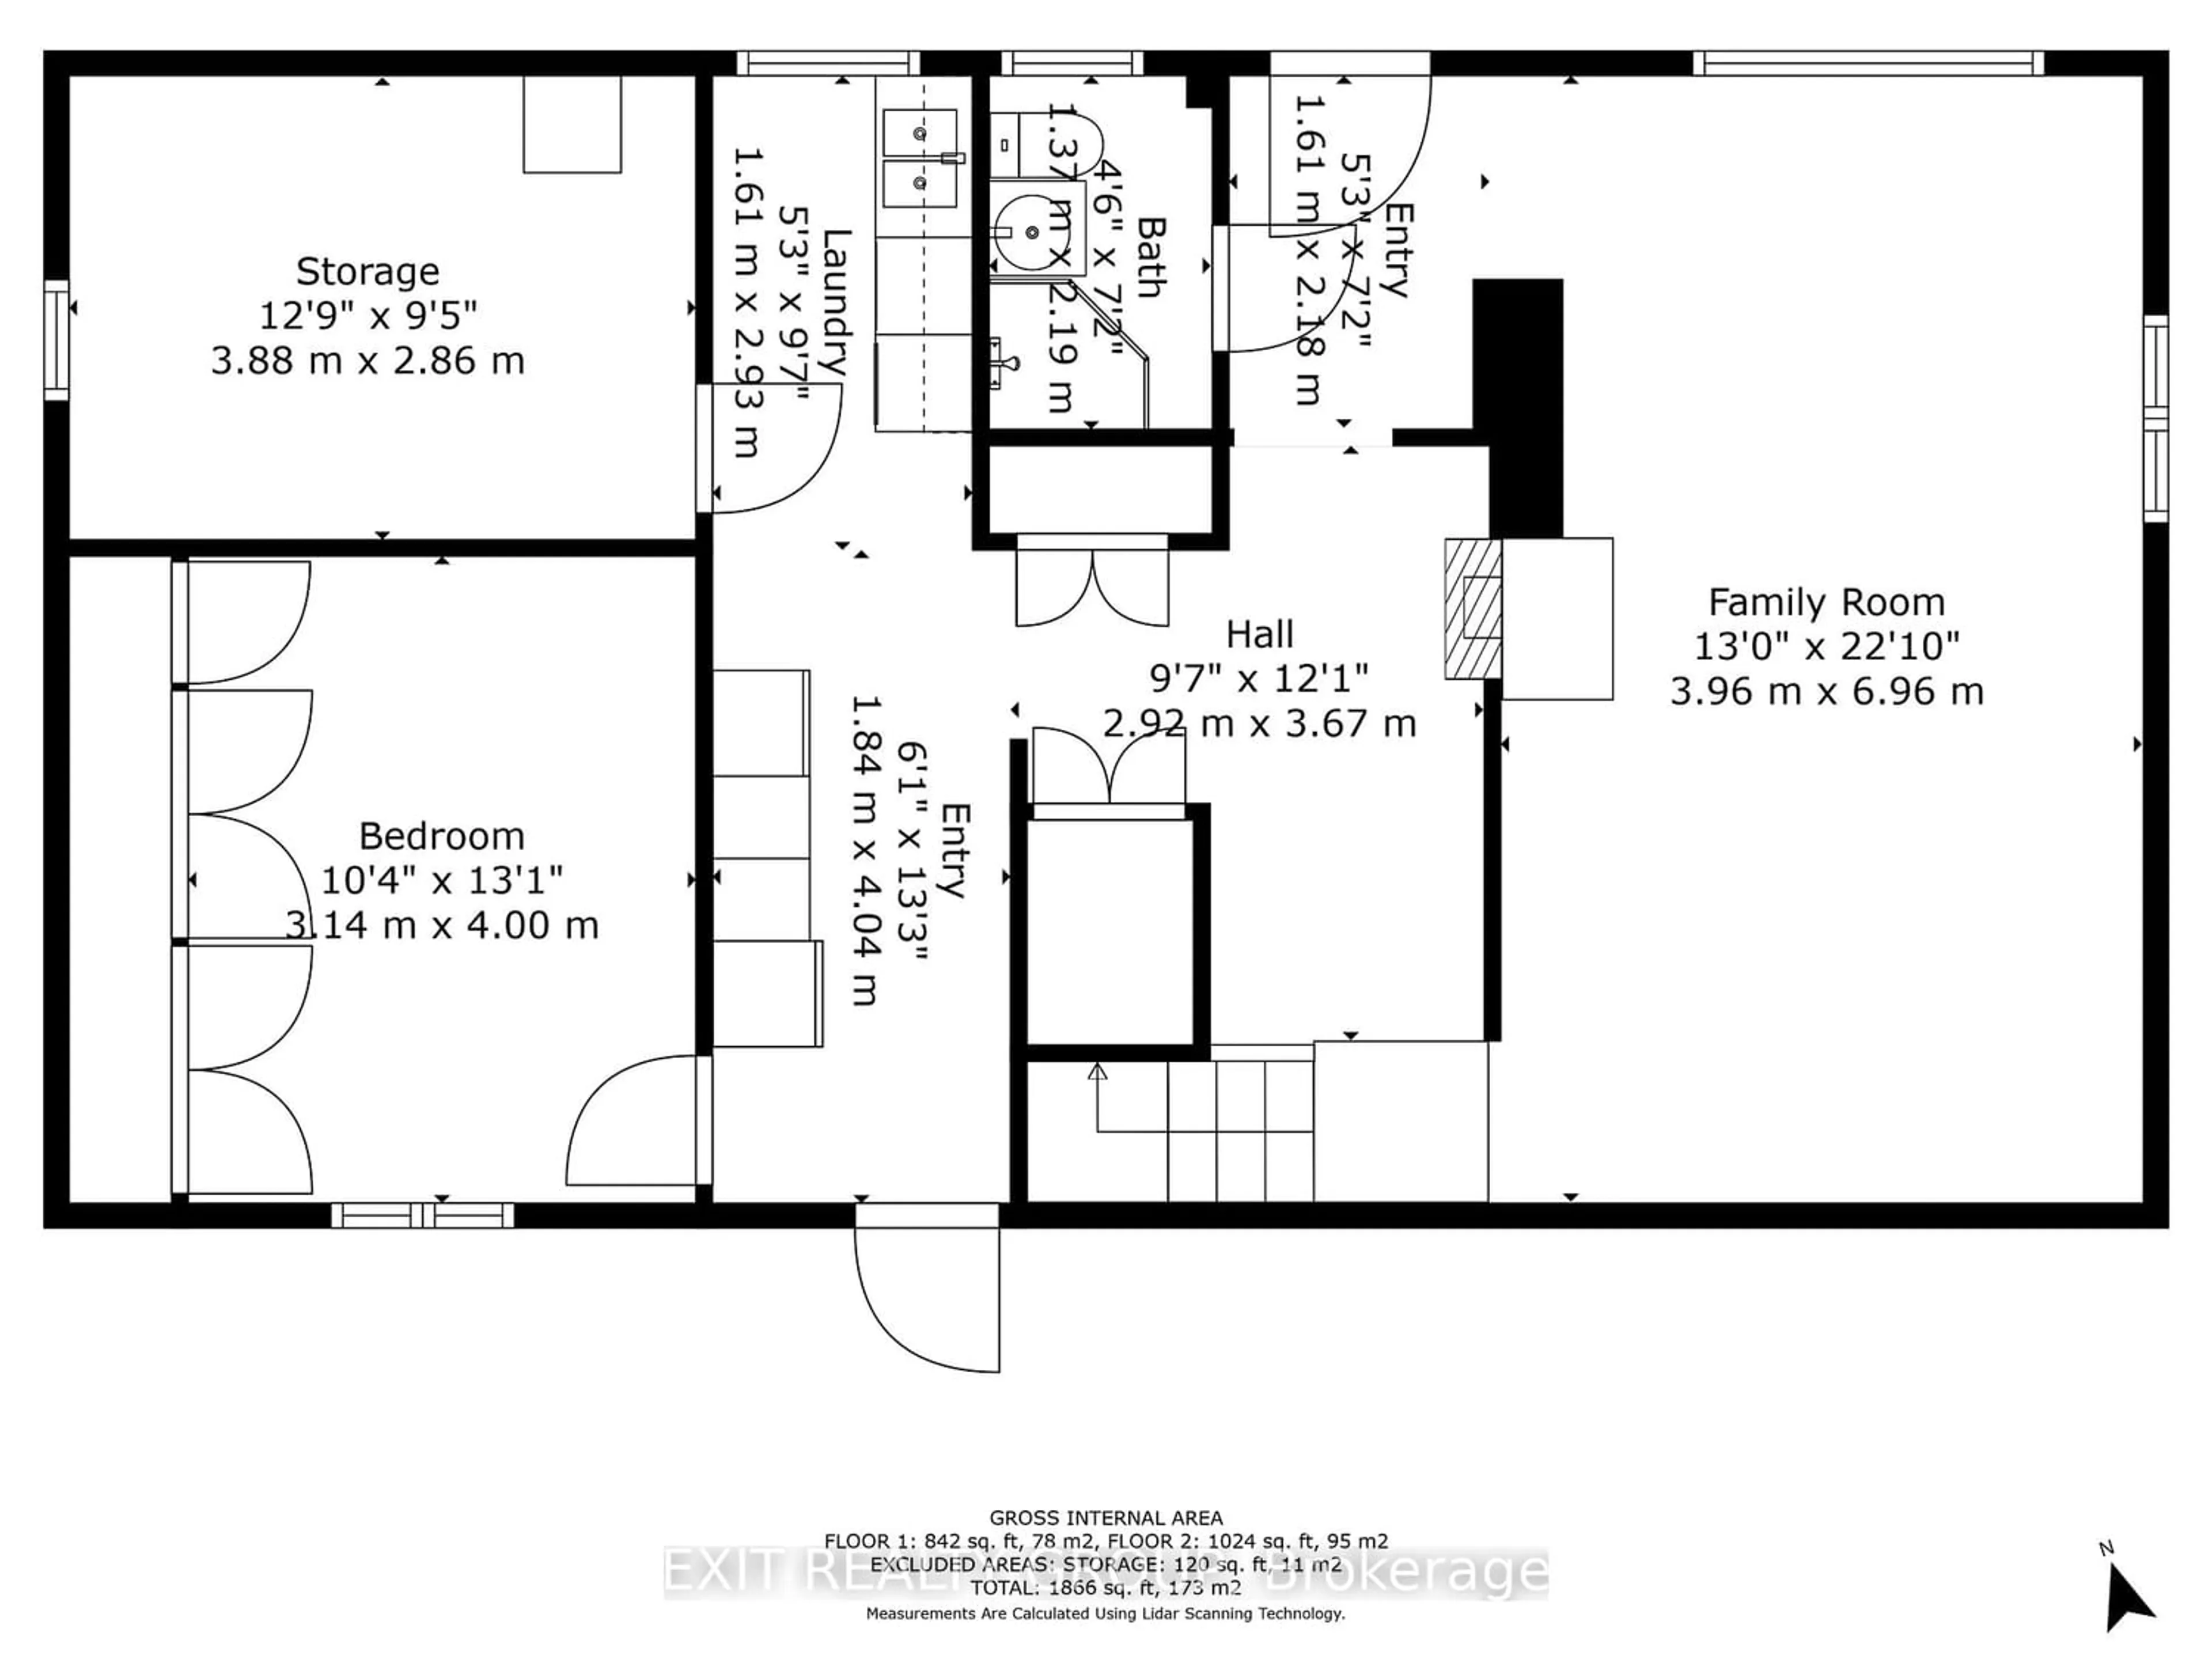 Floor plan for 159 Blakely Rd, Madoc Ontario K0K 1Y0